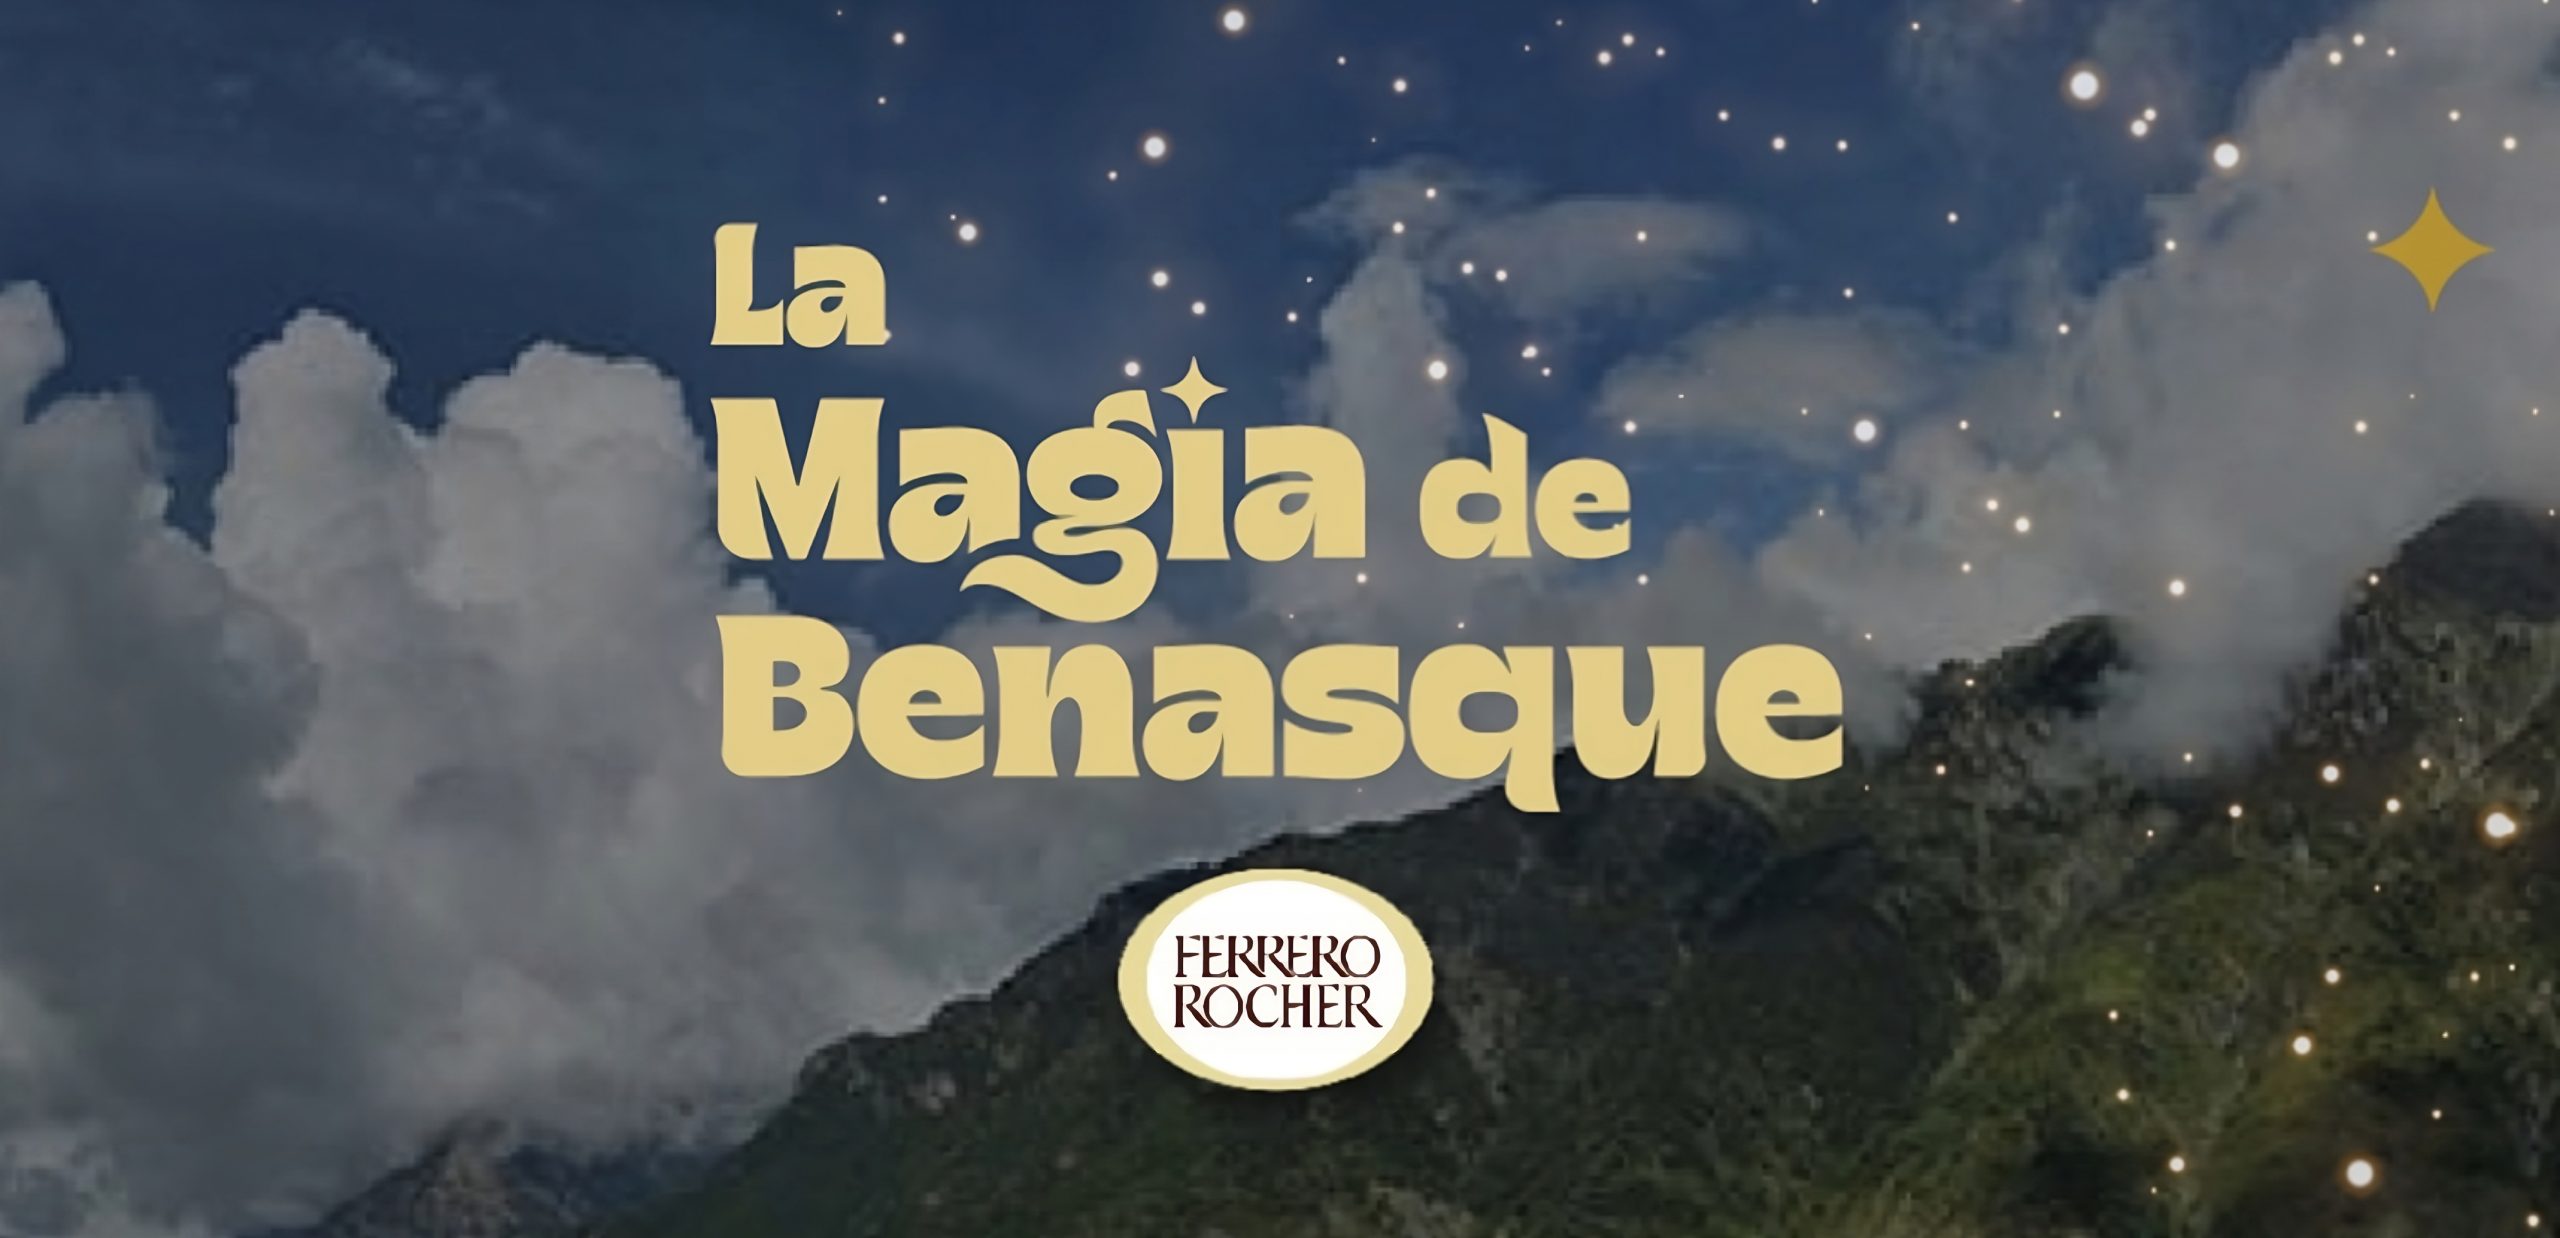 La Magia de Benasque 💫 busca su iluminación navideña con Ferrero Rocher ✨🎄